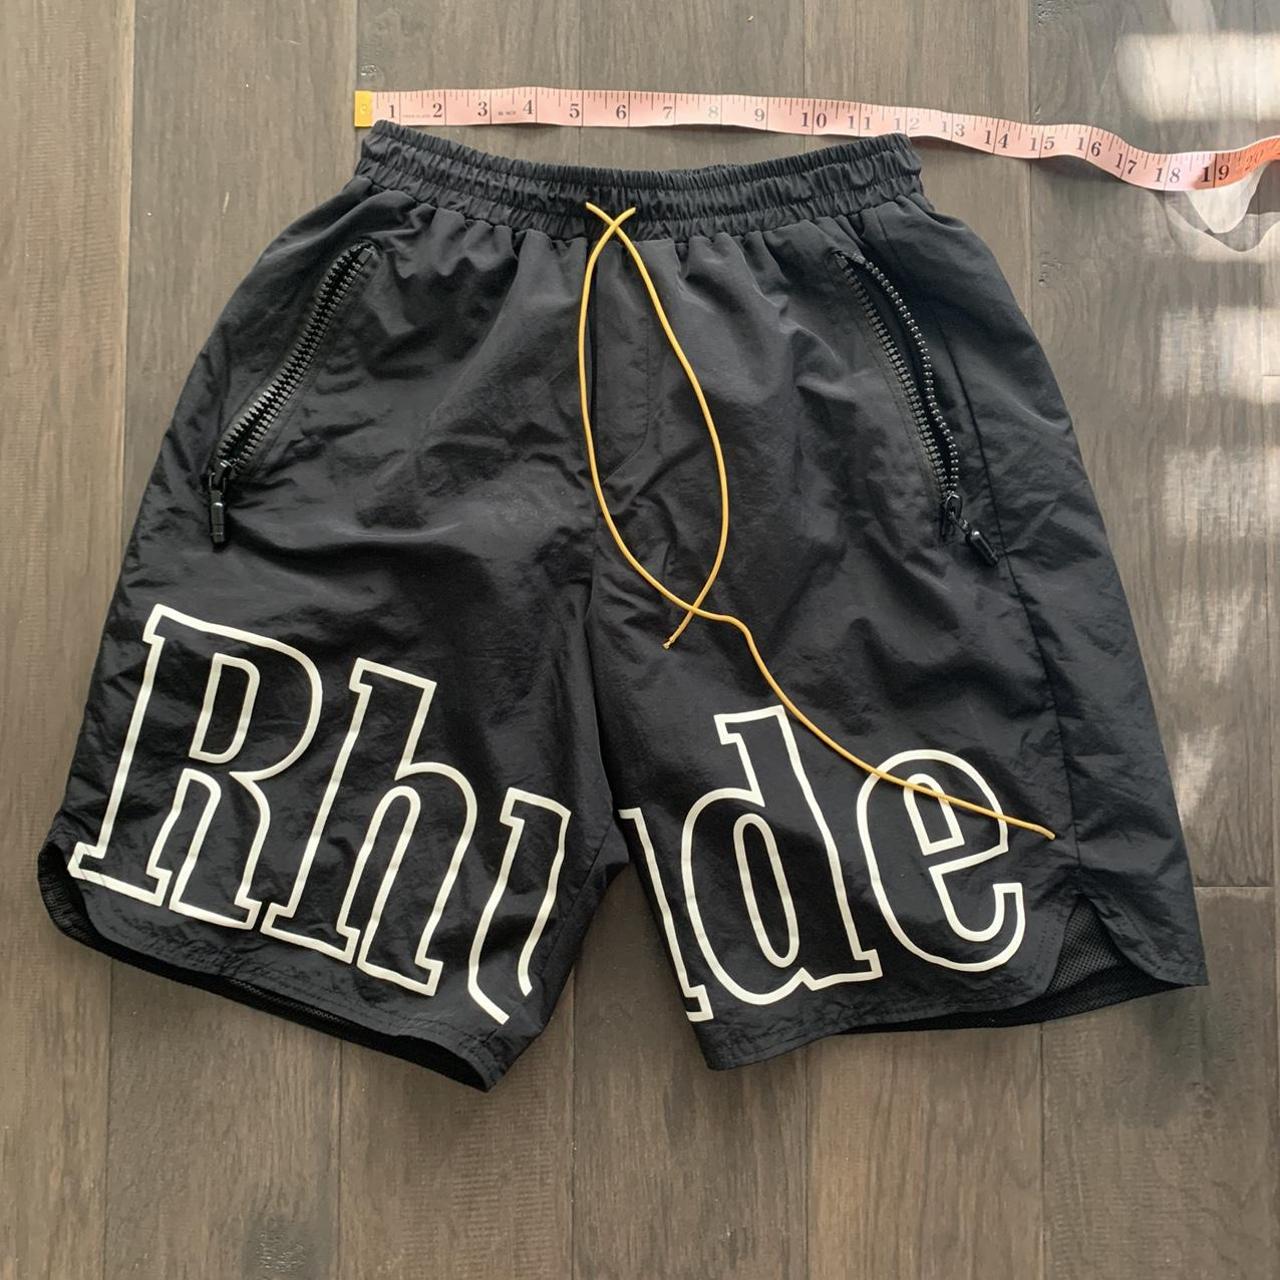 Product Image 1 - Black Rhude logo nylon shorts,